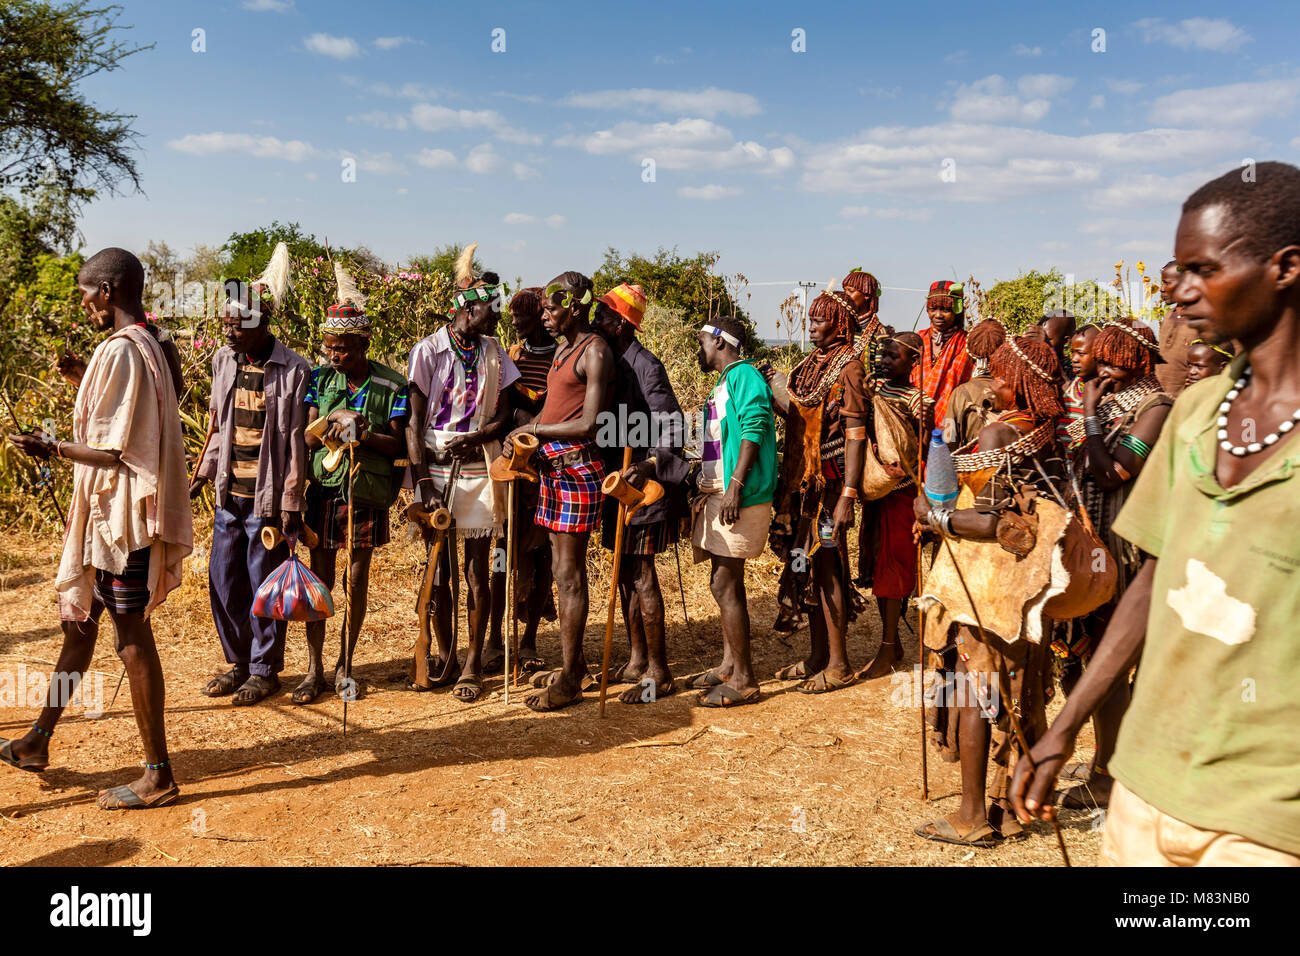 Hamar Menschen ankommen in einen Stier springen Zeremonie, Dimeka, Omo Valley, Äthiopien Stockfoto